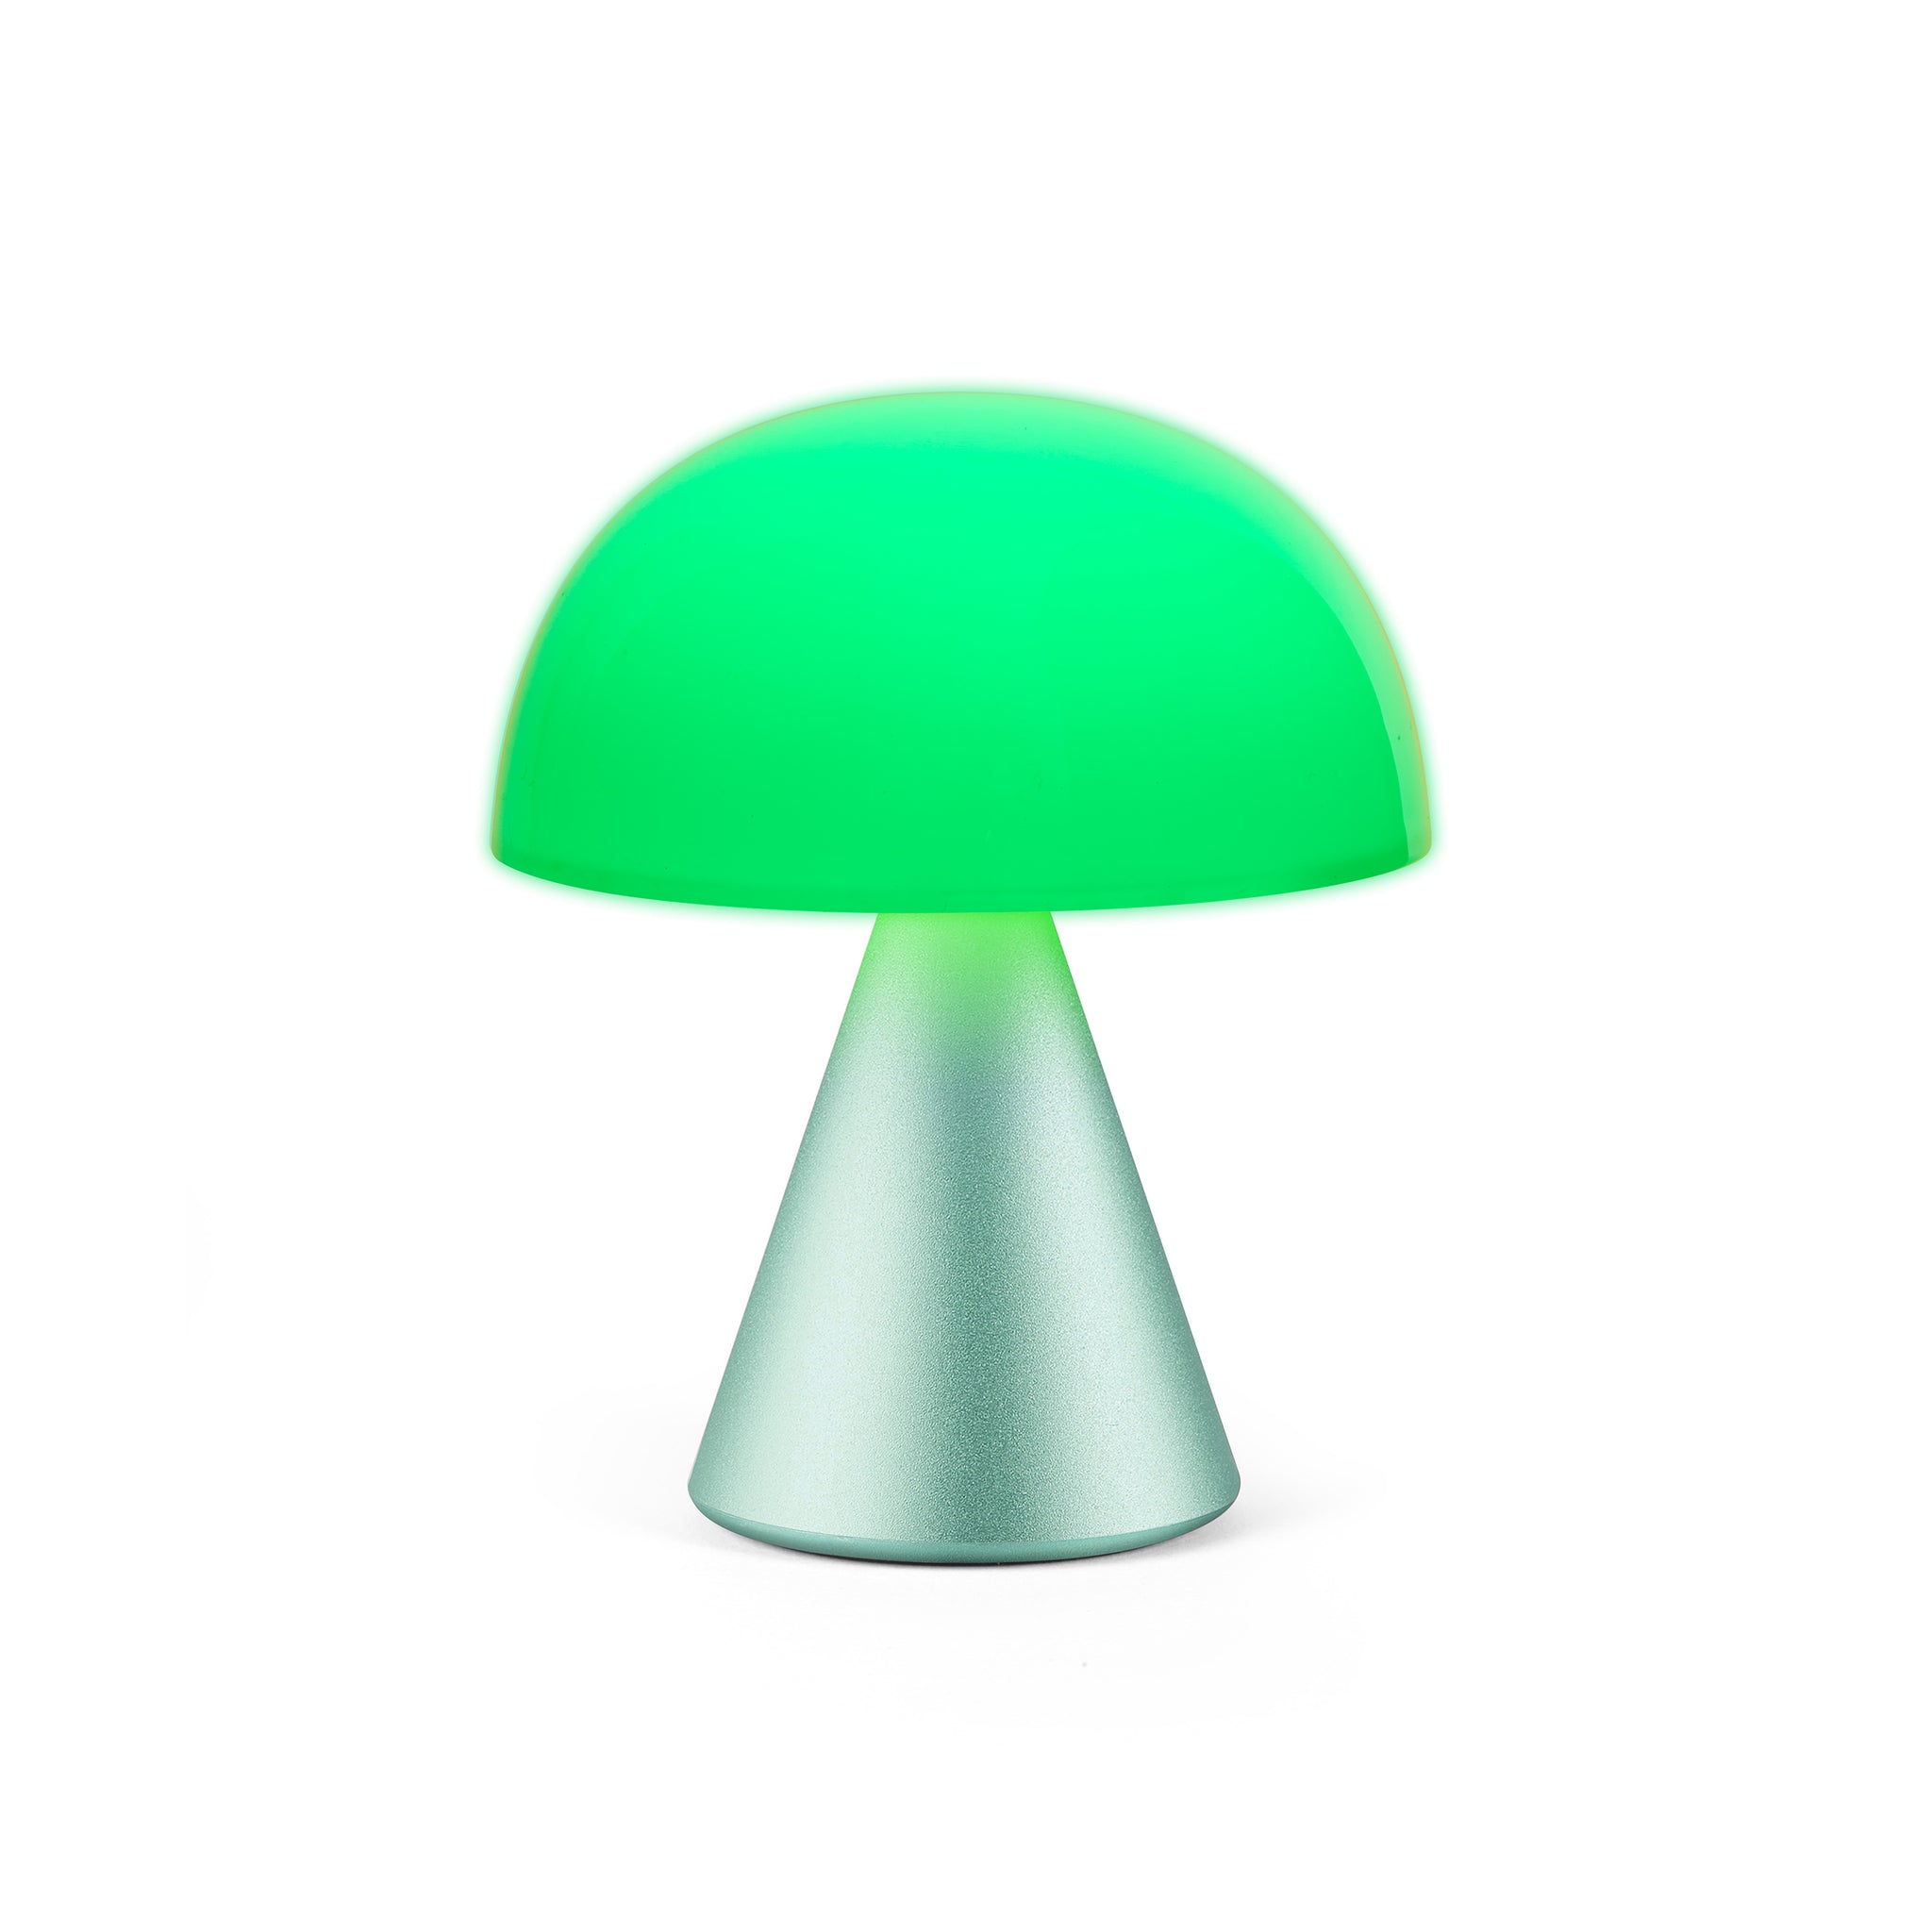 Lexon Mina Medium Mint Groen│LH64M1│Oplaadbare LED-Lamp│vooraanzicht met groen licht aan